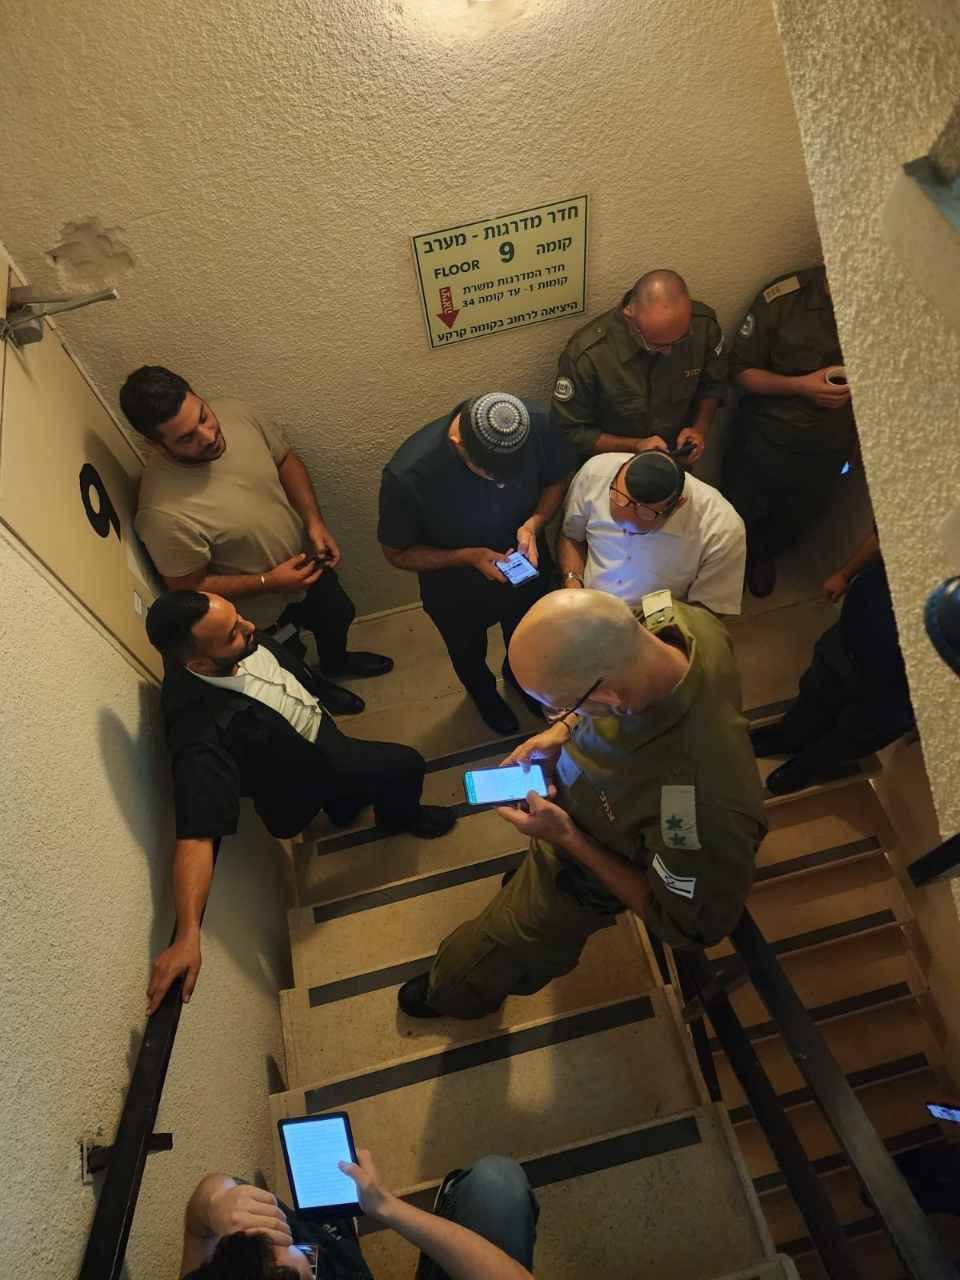 وزير بحكومة الاحتلال كاراي يظهر في الصورة بعد هروبه إلى الملاجئ بعد انطلاق صافرات الإنذار في تل أبيب